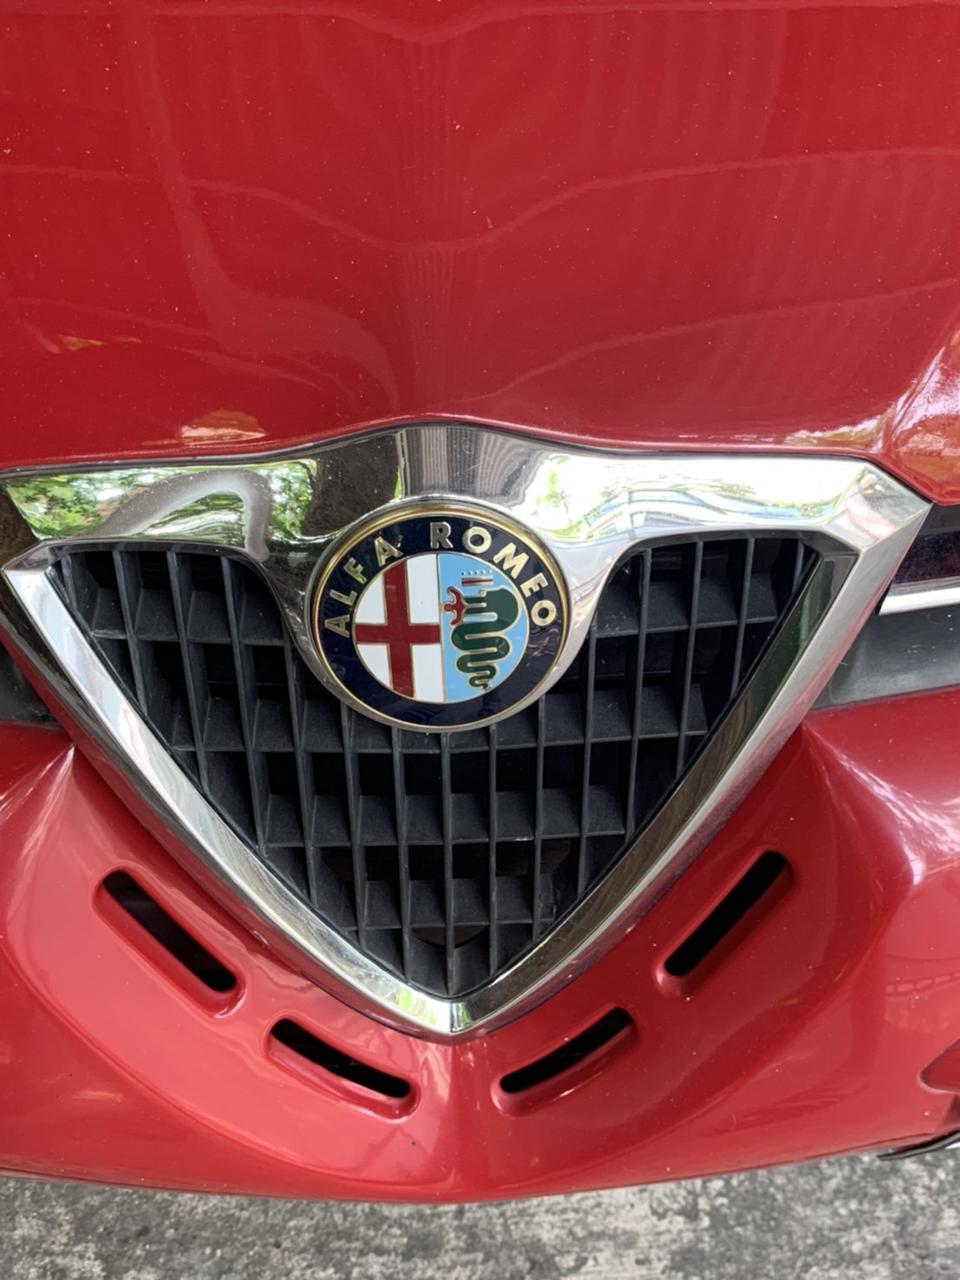 Alfa Romeo 156 โฉม 99-04 พร้อมฟรีล้อแม็กสองชุด แต่งสวยทั้งคัน สภาพใหม่มาก